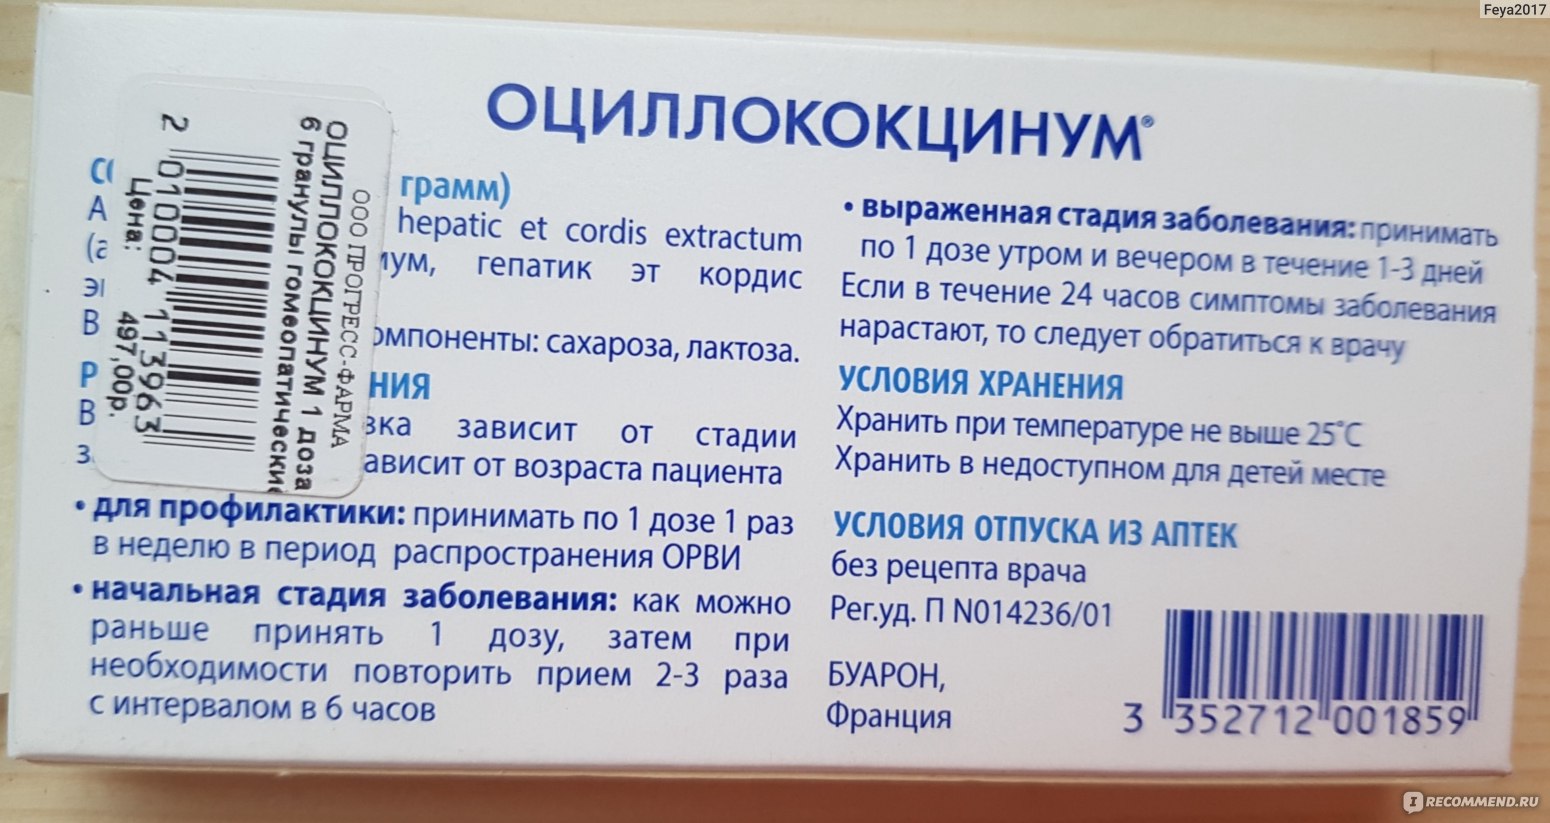 Таблетки Оциллококцинум Инструкция По Применению Цена